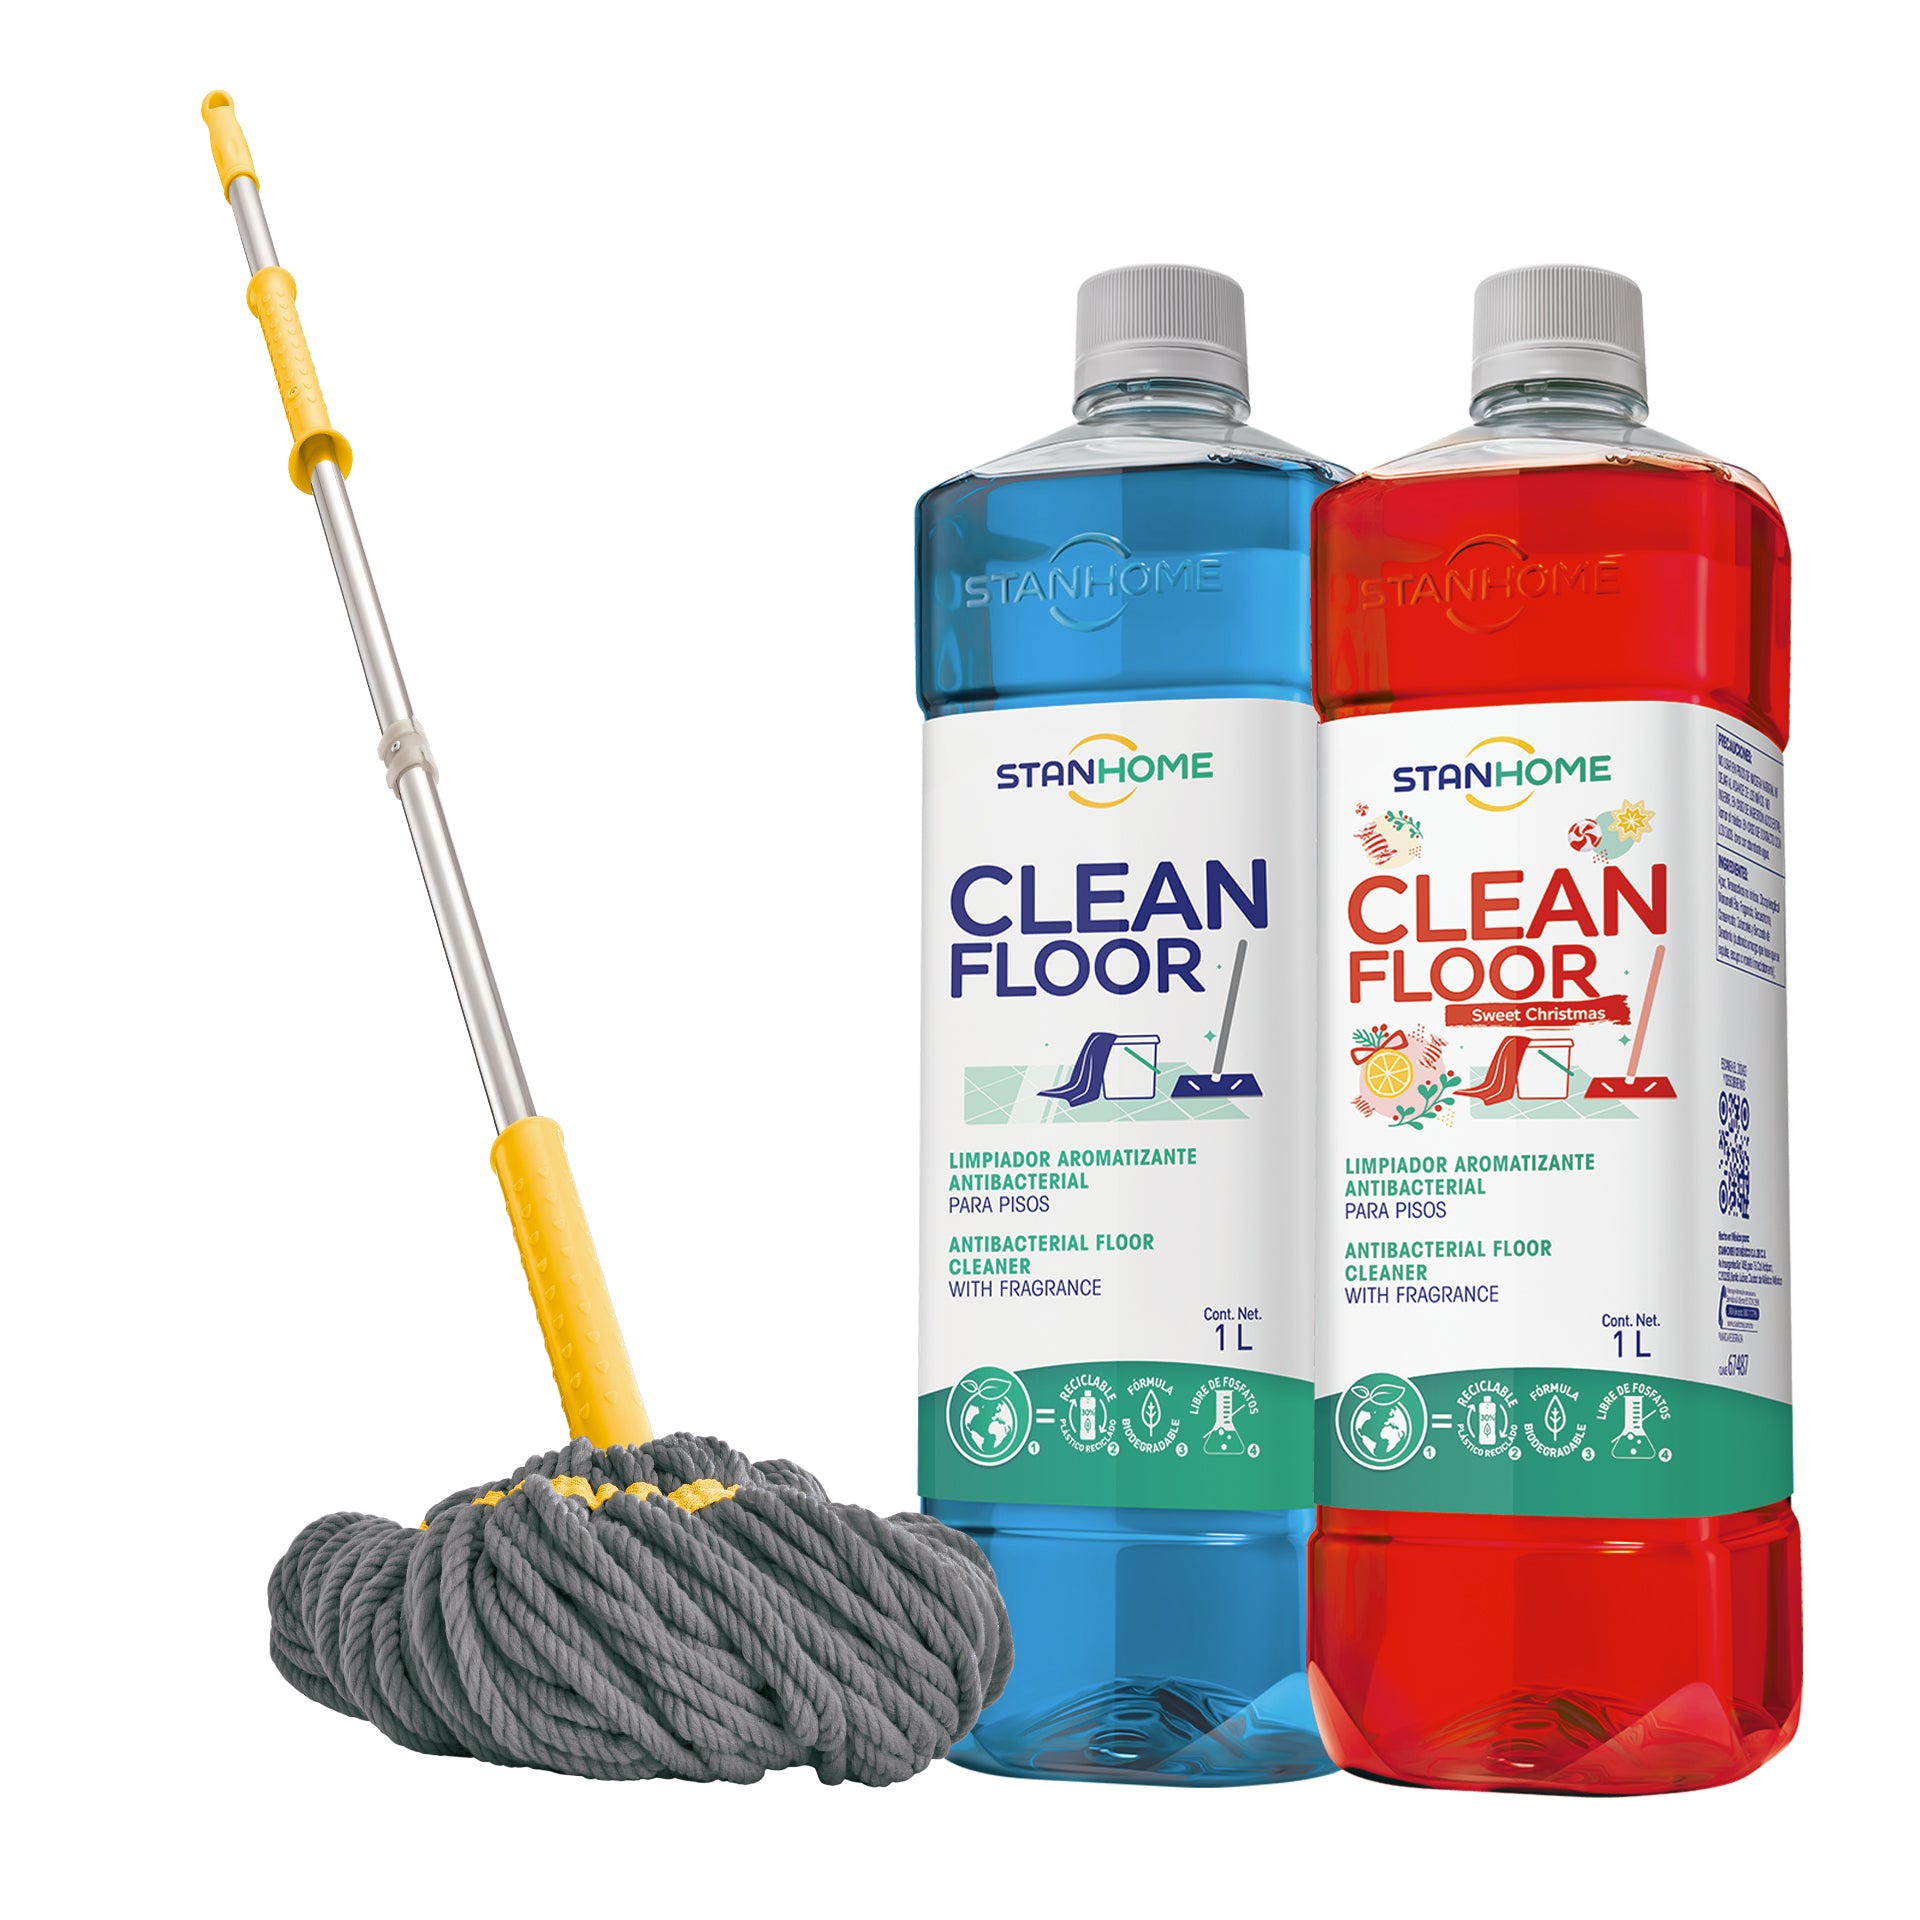 Comprar productos de hogar STANHOME limpieza online